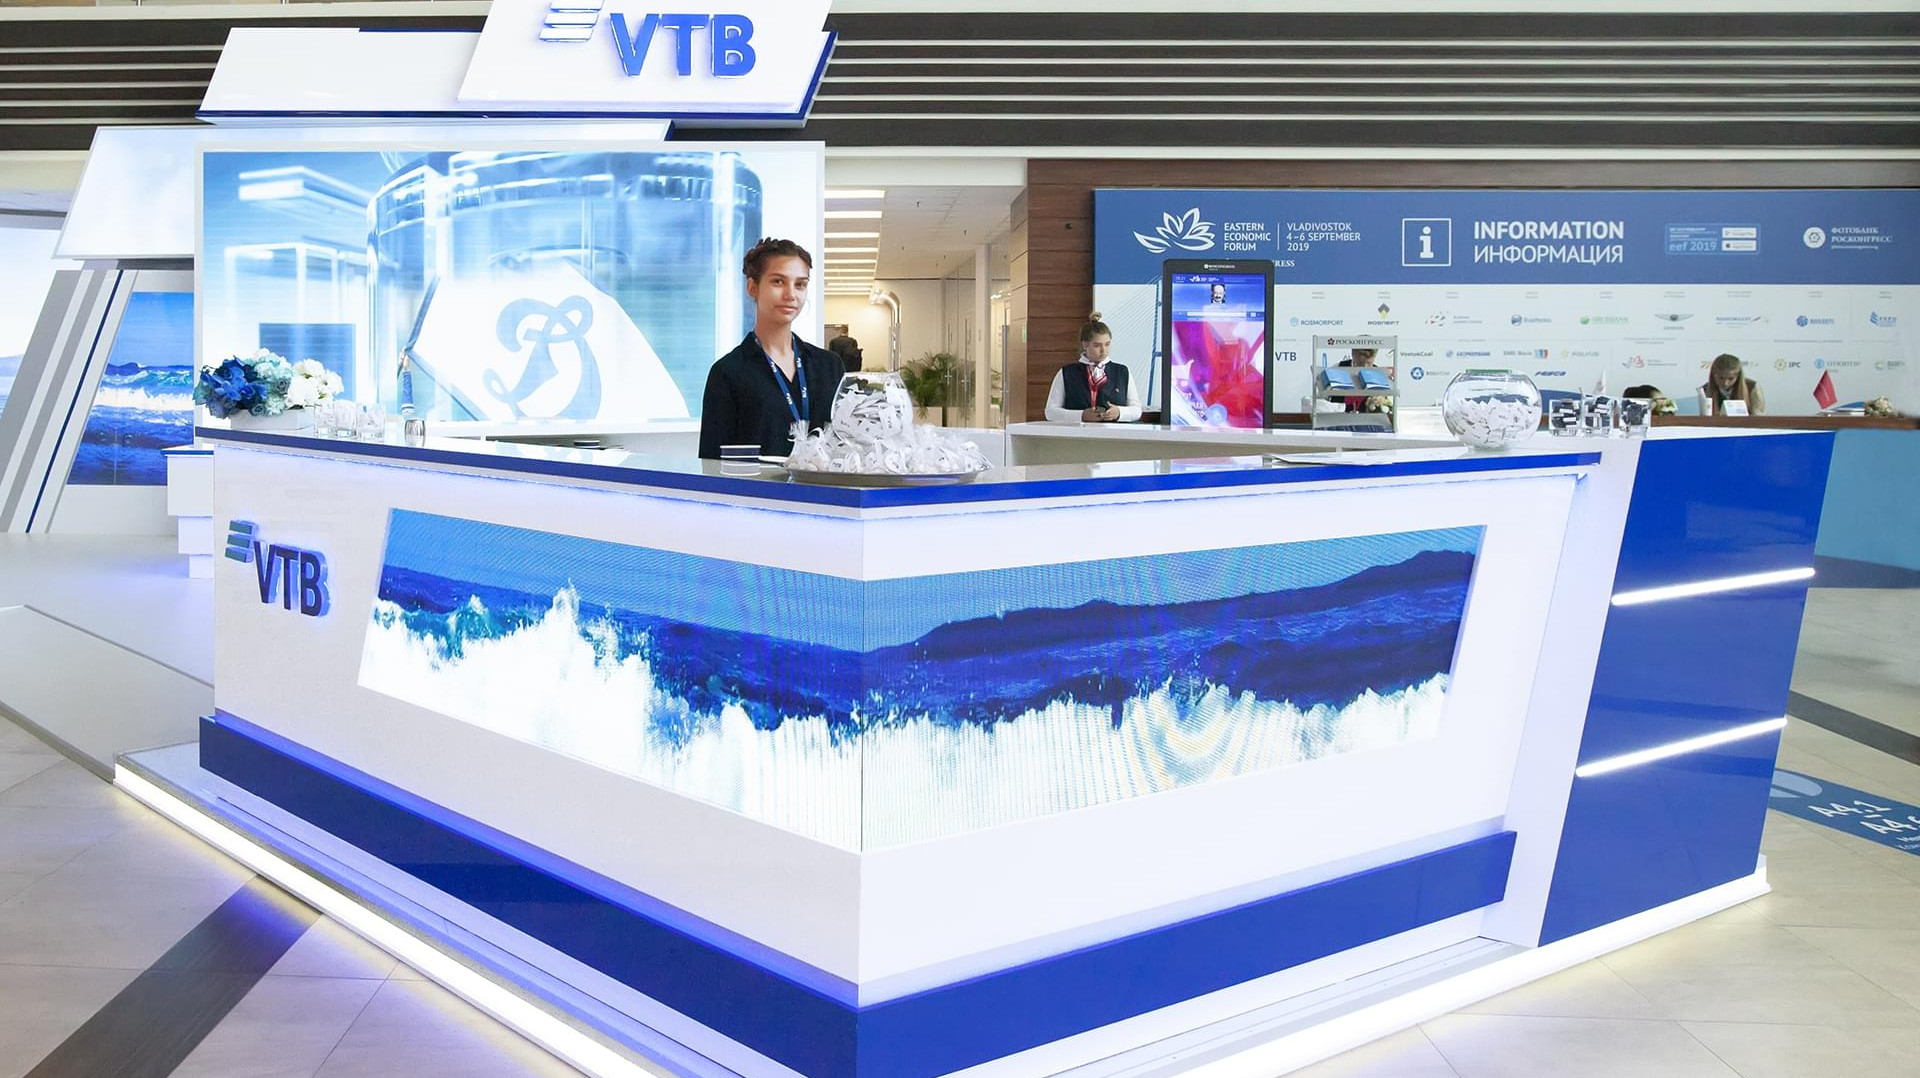 Выставочное пространство ВТБ на ВЭФ-2019 воплотило в себе сочетание узнаваемого брендинга Банка и моря – символичной отсылки к месту проведения Форума